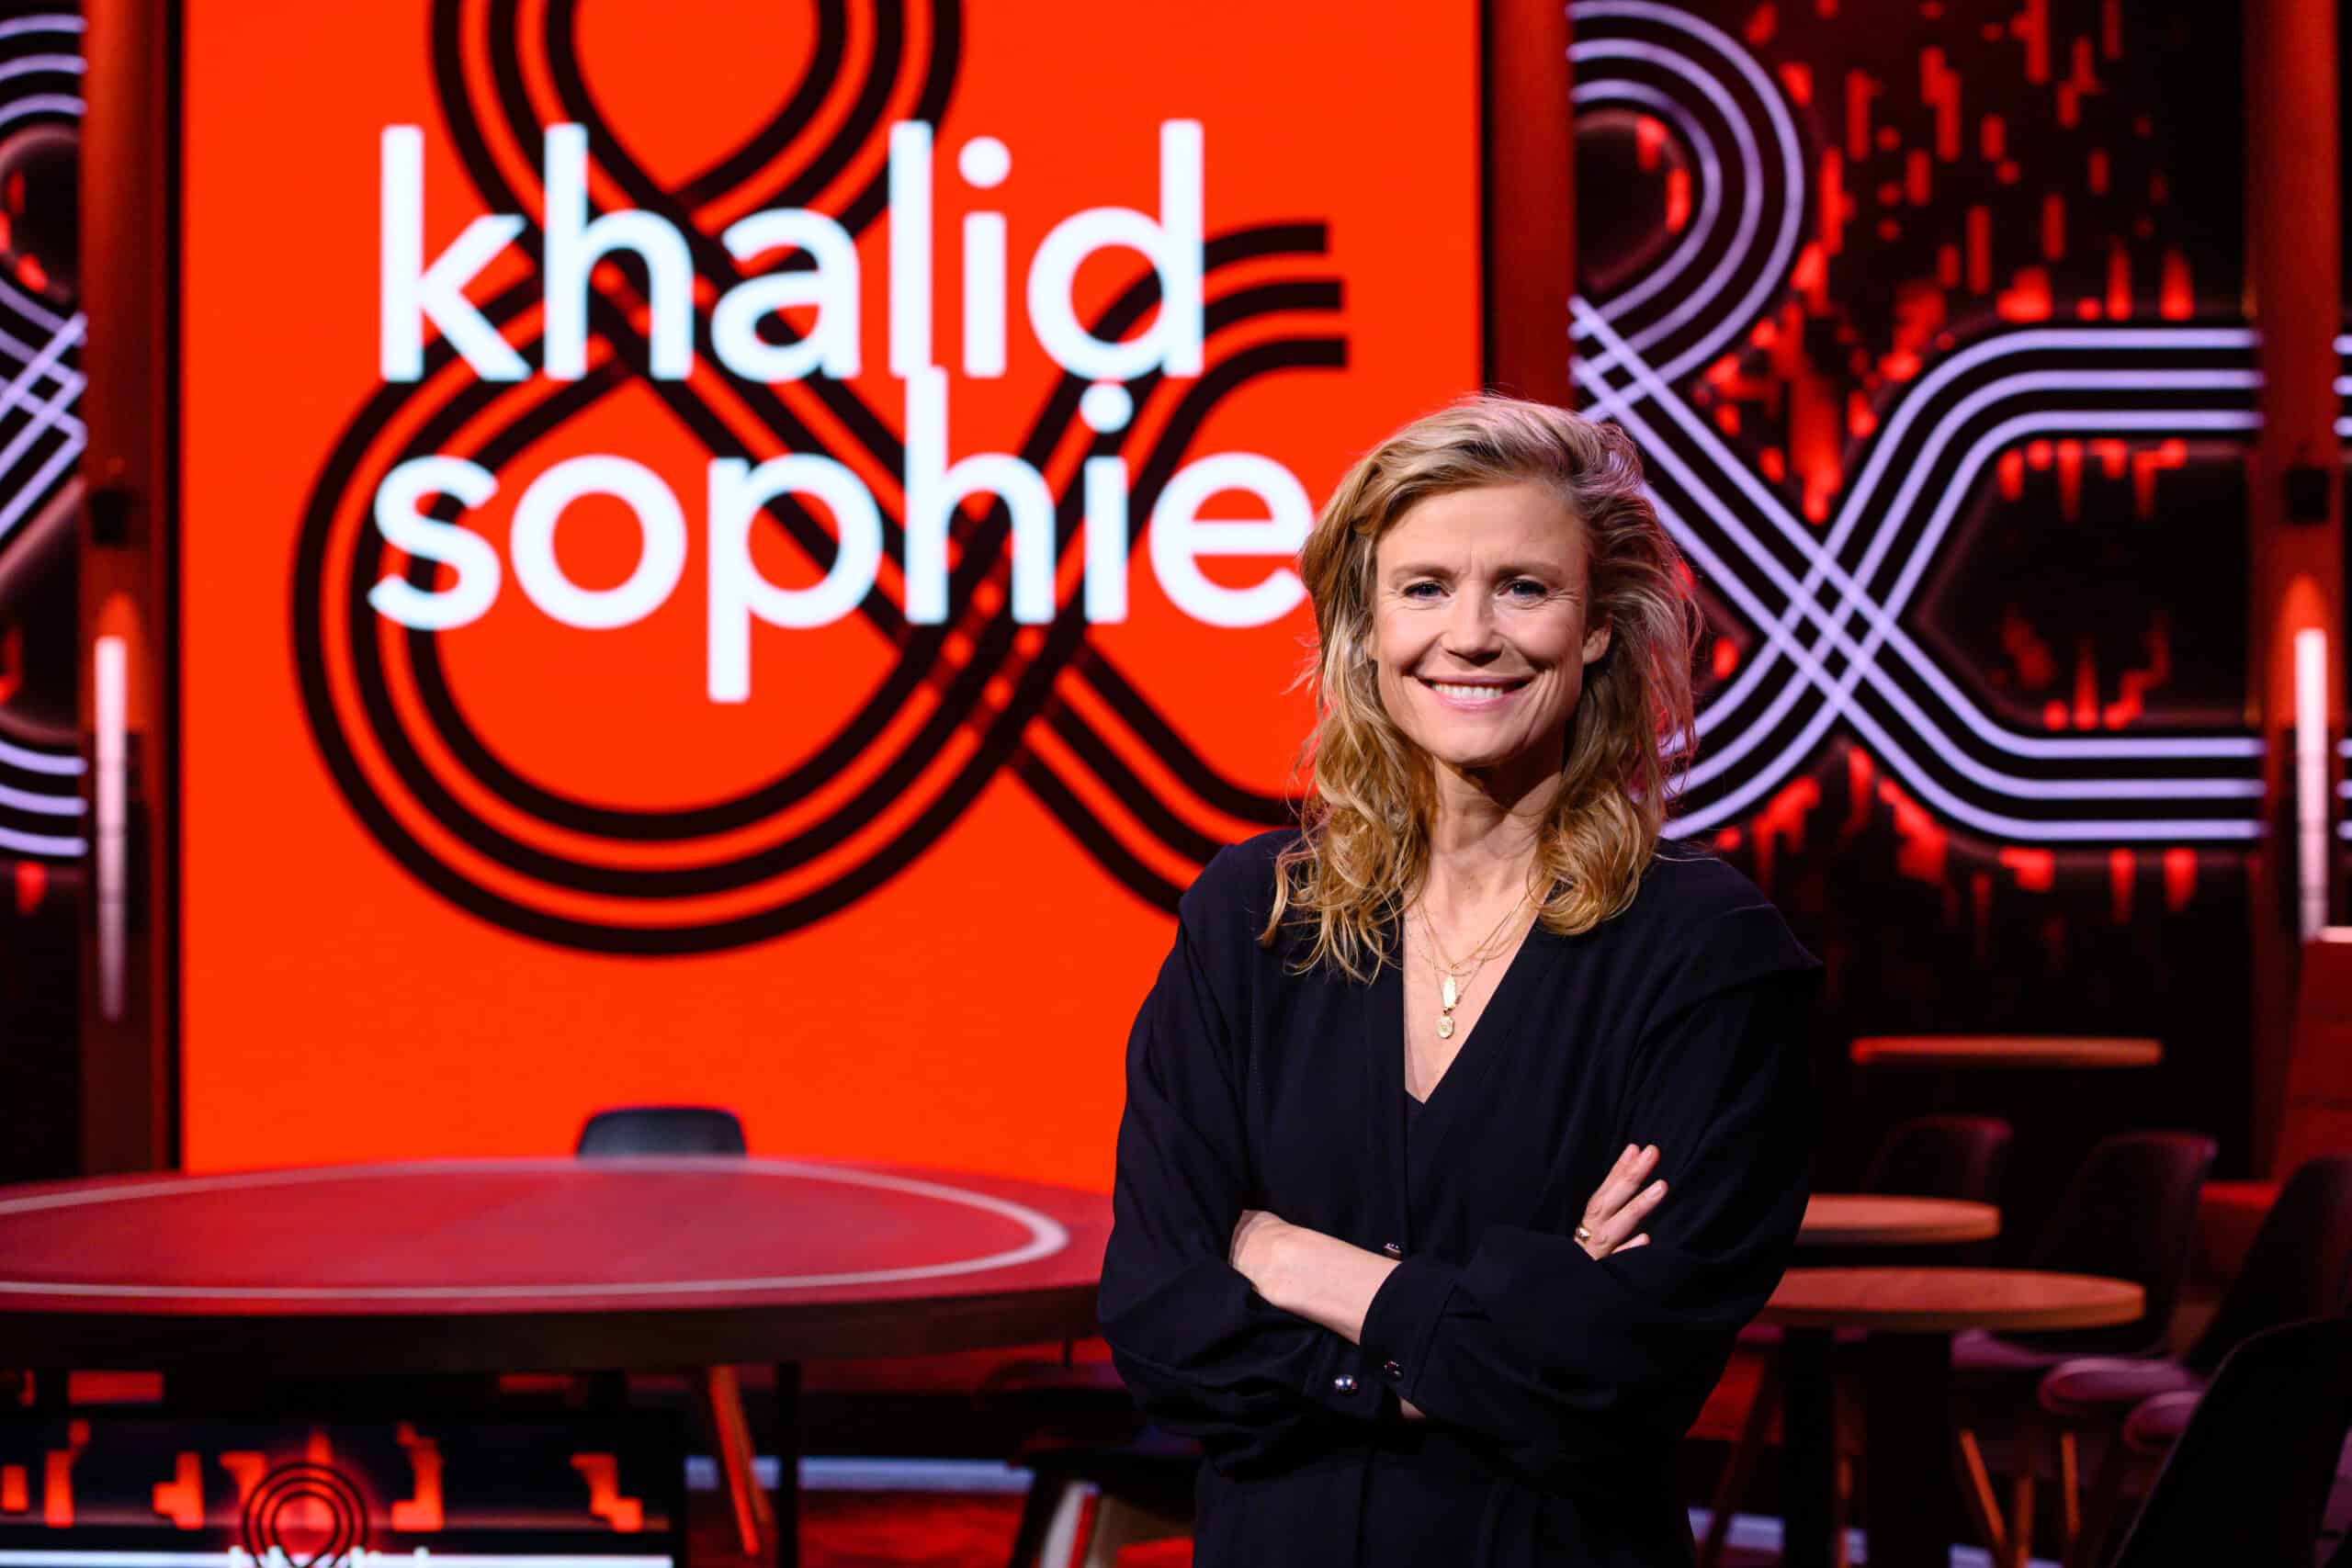 Sophie Hilbrand poseert in studio van Khalid & Sophie.